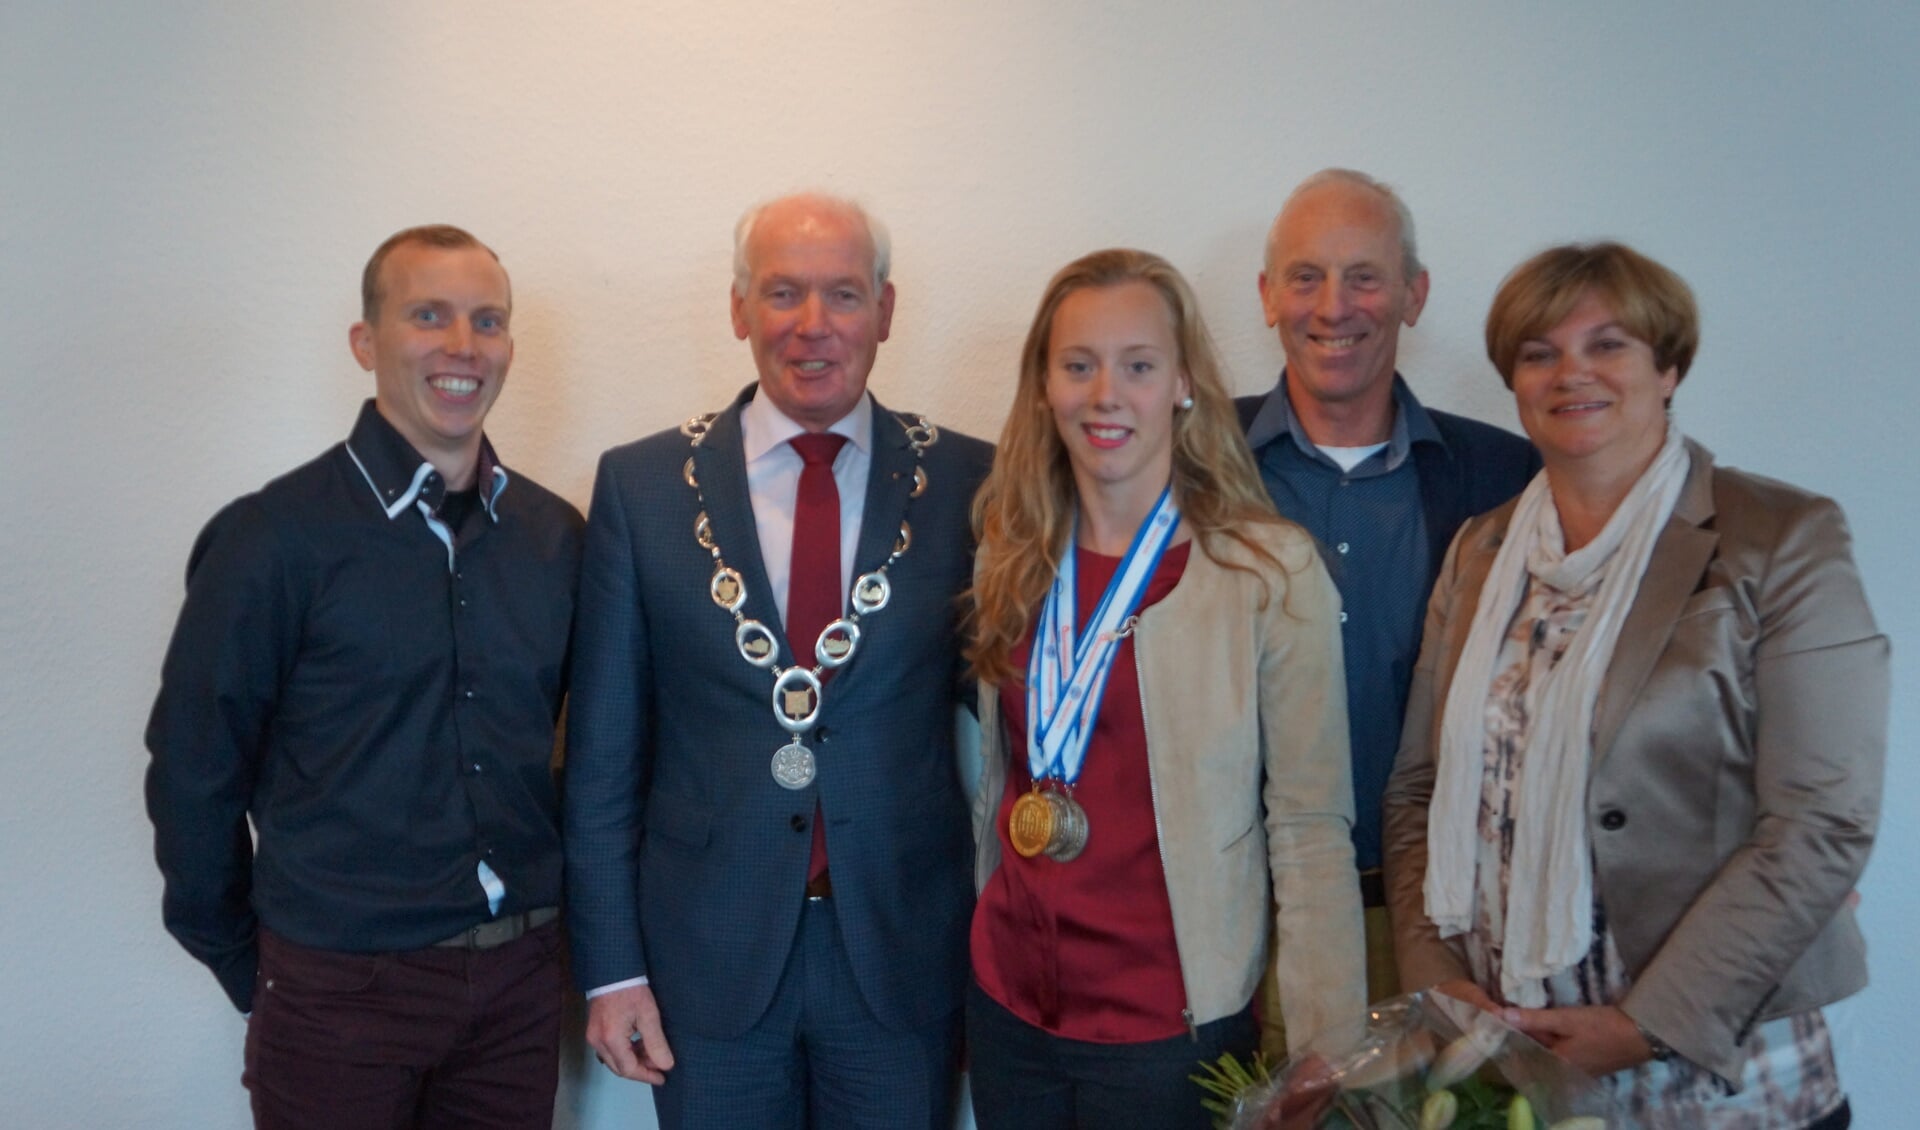 Elise Pennings poseert trots met haar ouders, burgemeester Maas en haar vriend, die tevens haar coach is.